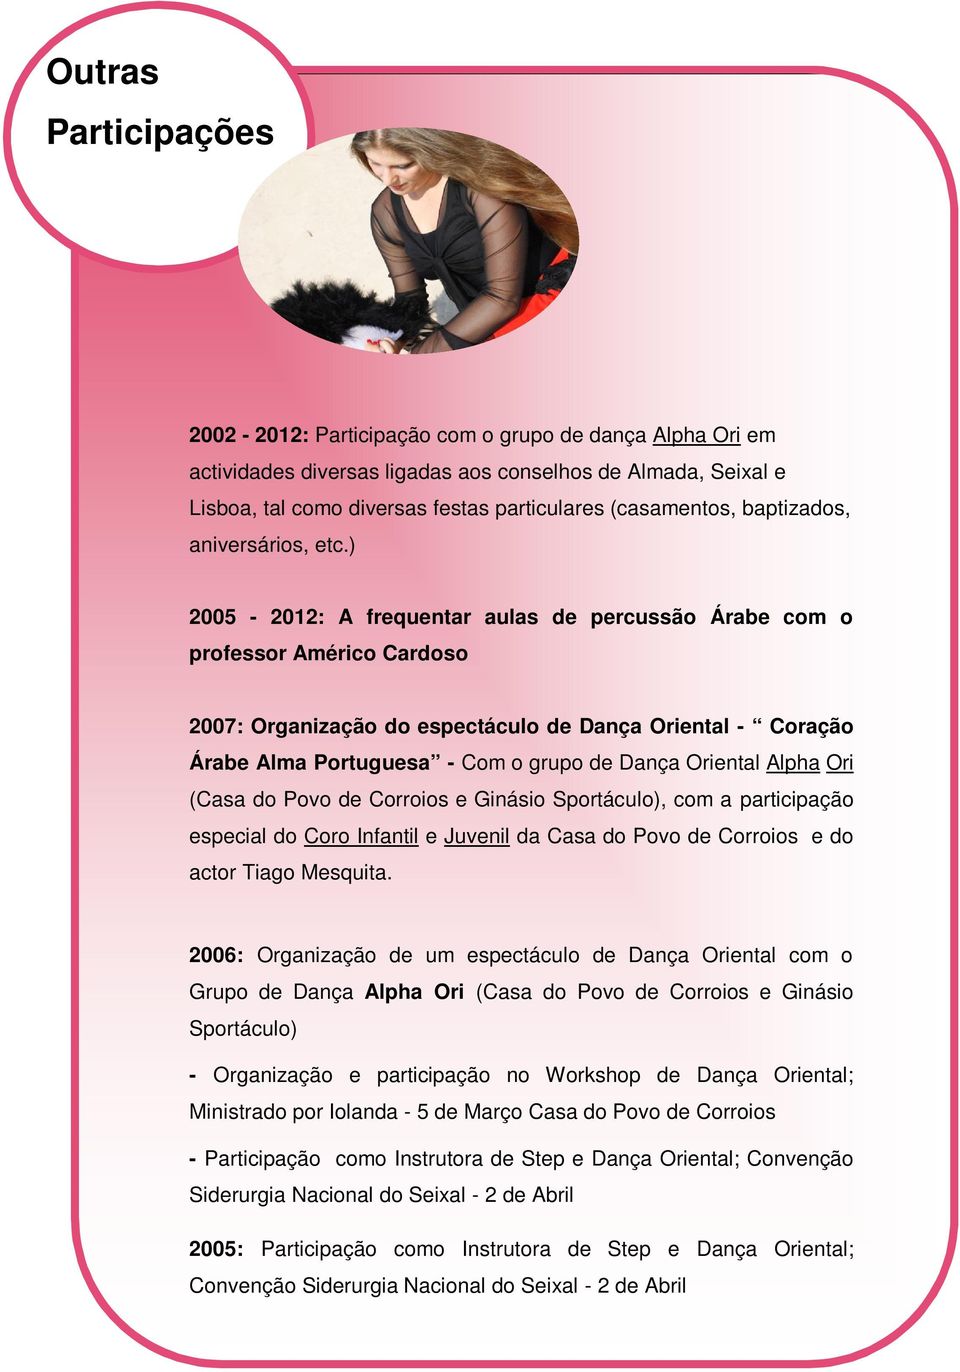 ) 2005-2012: A frequentar aulas de percussão Árabe com o professor Américo Cardoso 2007: Organização do espectáculo de Dança Oriental - Coração Árabe Alma Portuguesa - Com o grupo de Dança Oriental